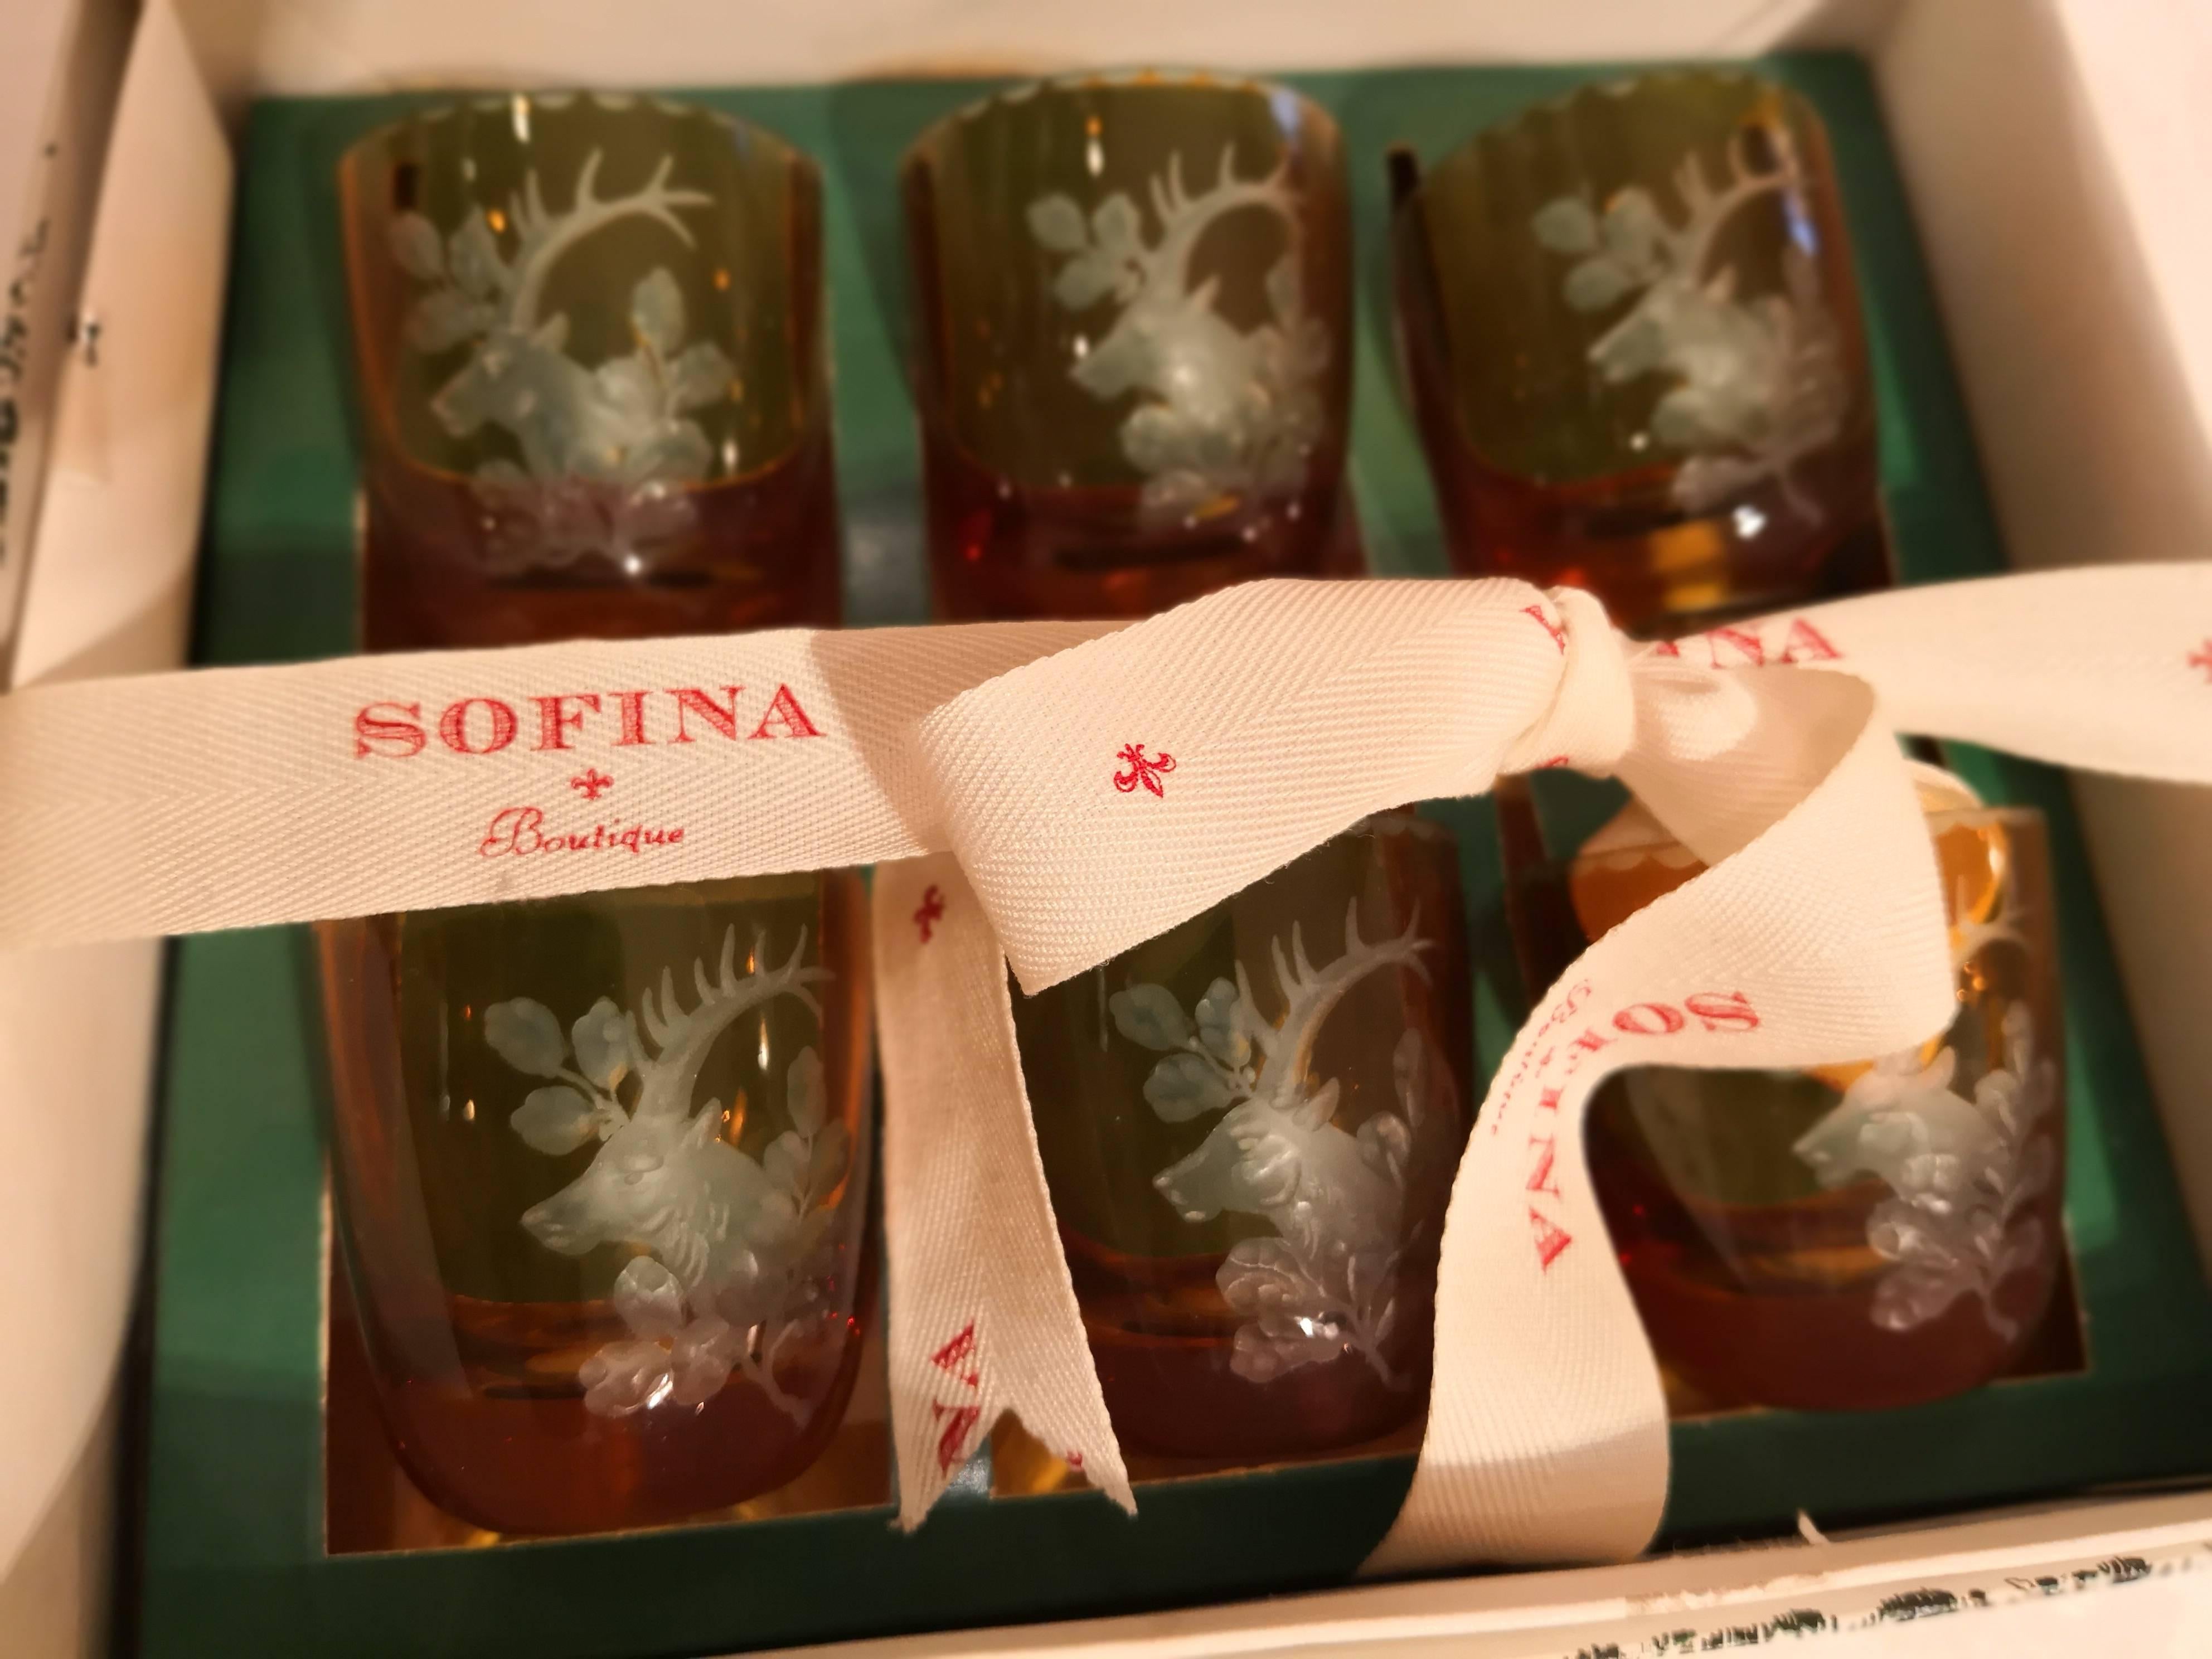 Forêt-Noire Ensemble de six verres allemands Schnapps de la Forêt Noire ambrés avec scène de chasse Sofina en vente